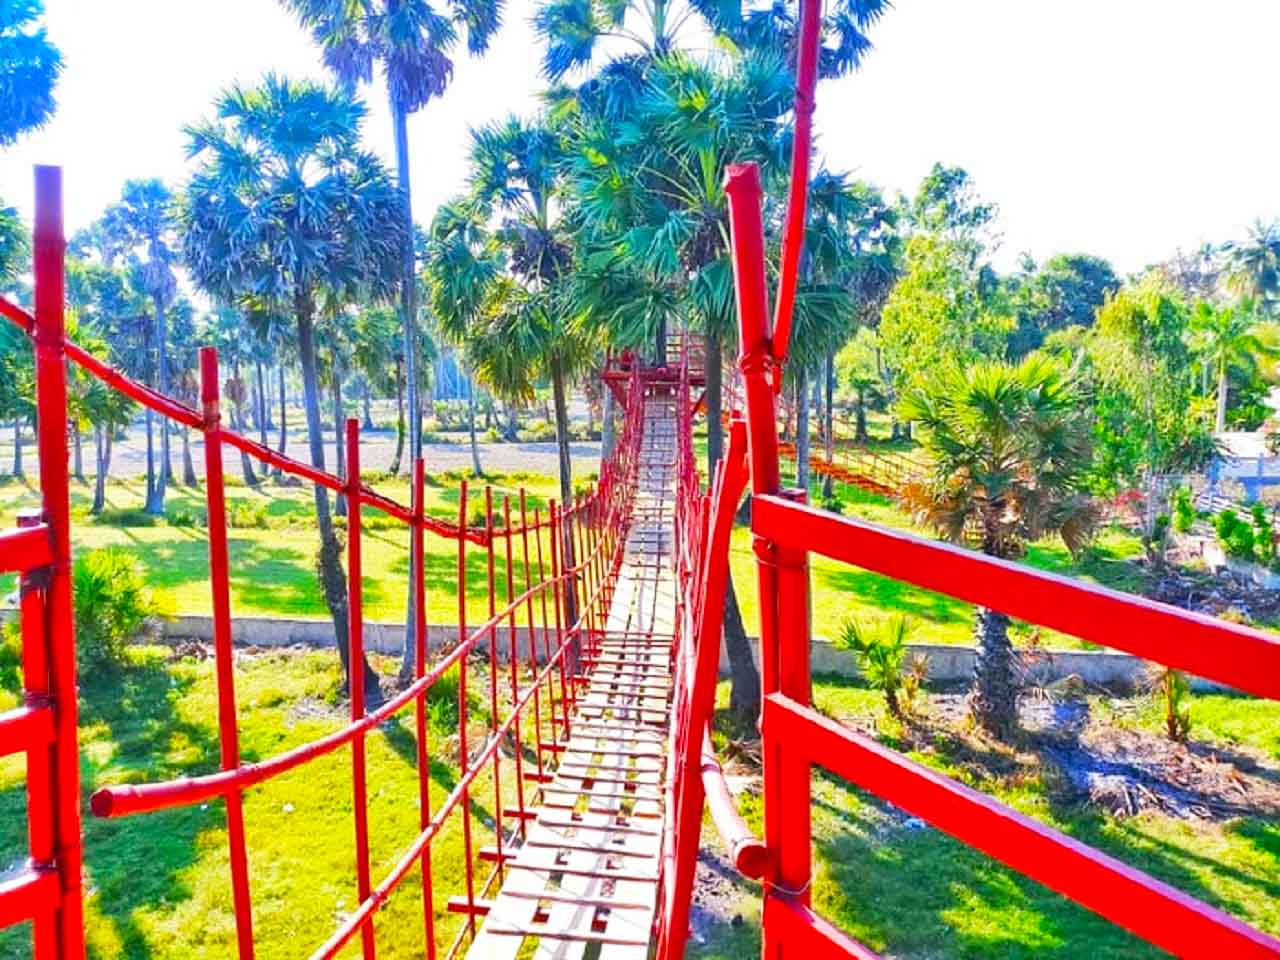 Cầu treo trở thành địa điểm check in ở An Giang